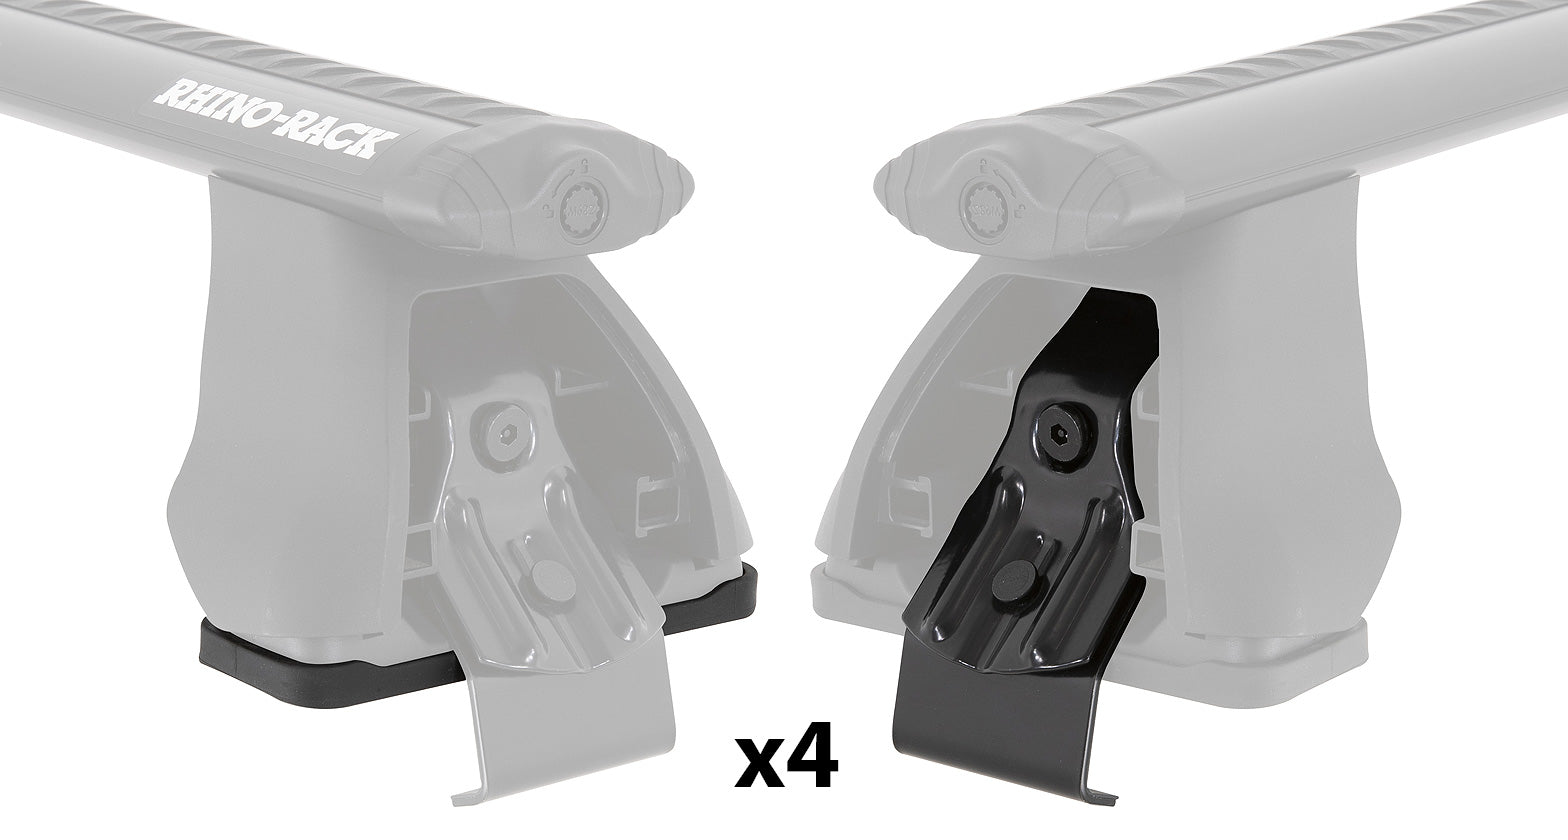 PAD & CLAMP KIT FOR RHINO 2500 MULTI FIT - DK220